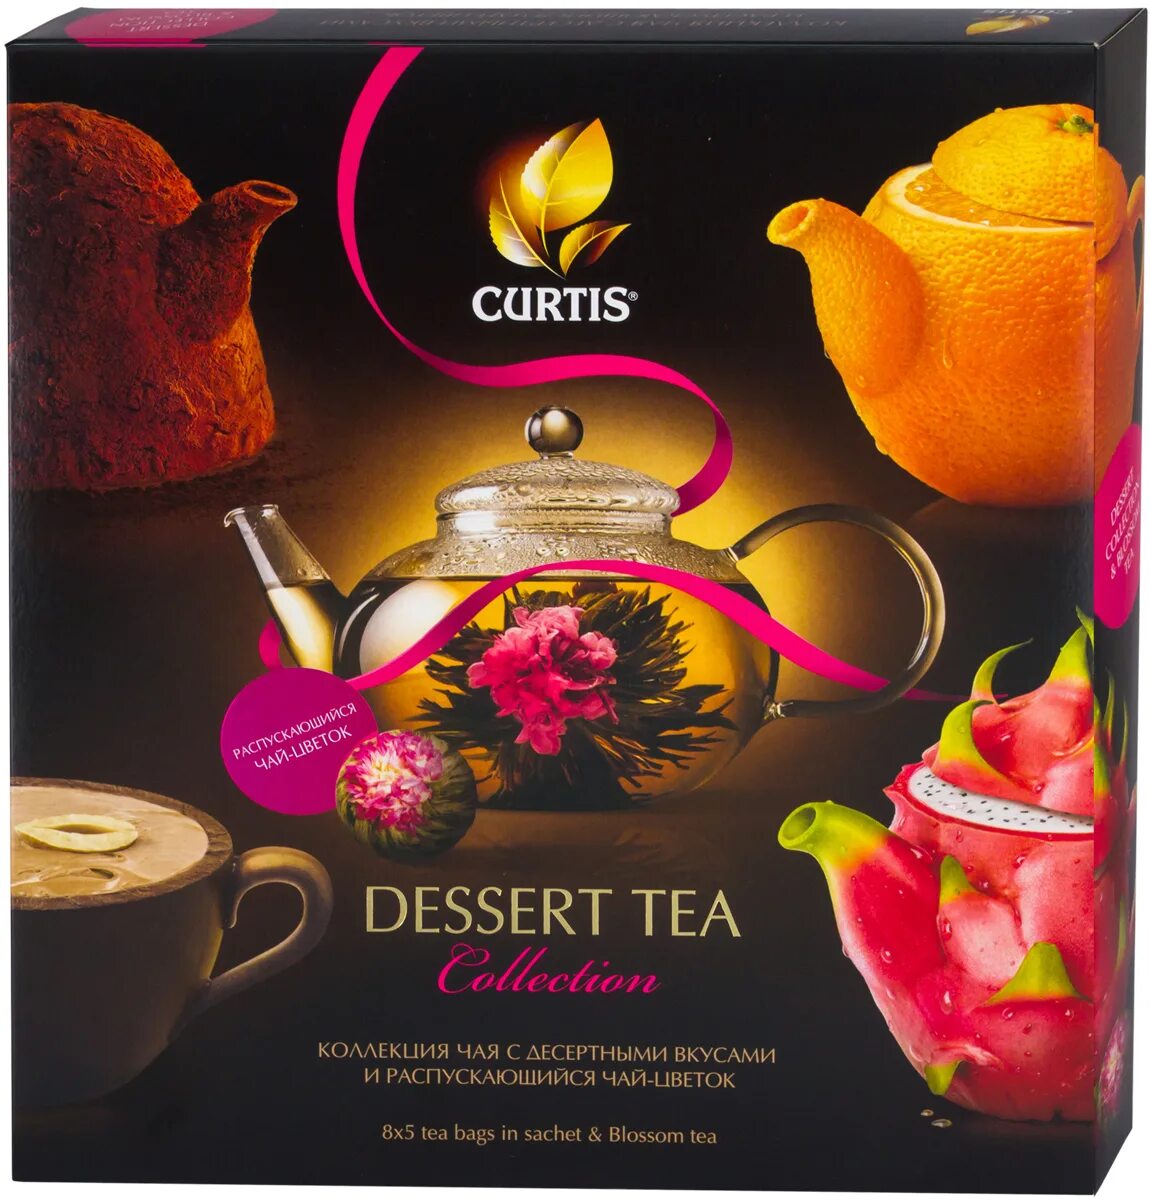 Купить чай в магните. Чай Кёртис десерт набор 40. Чай Curtis Dessert Tea collection. Чай Кертис 40 пакетиков набор. Чай Кертис подарочный набор в магните.